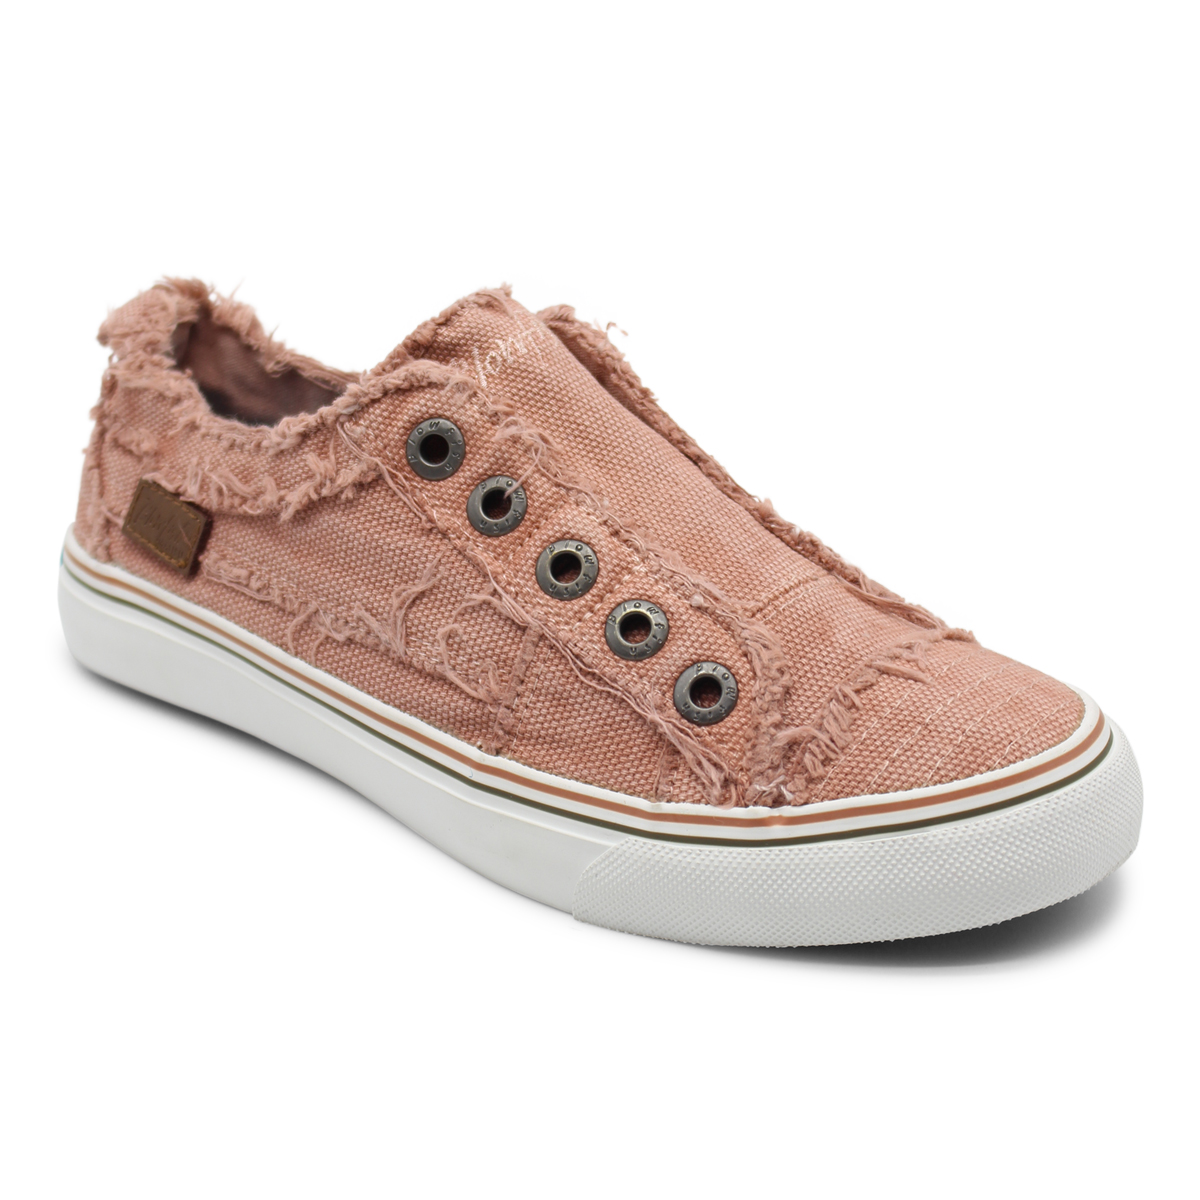 pink blowfish shoes